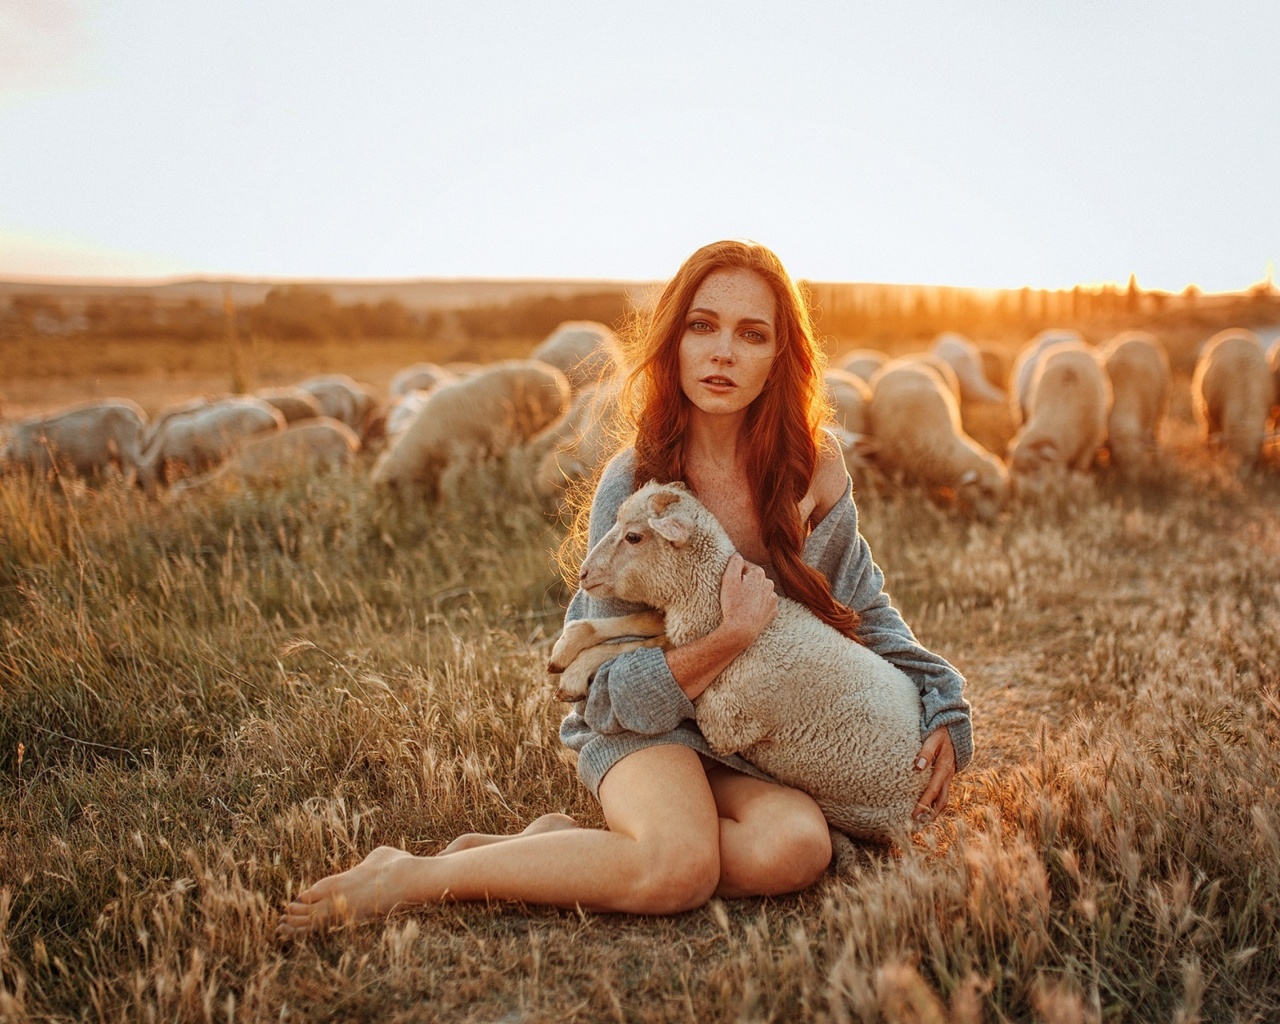 Обои Girl with Sheep 1280x1024